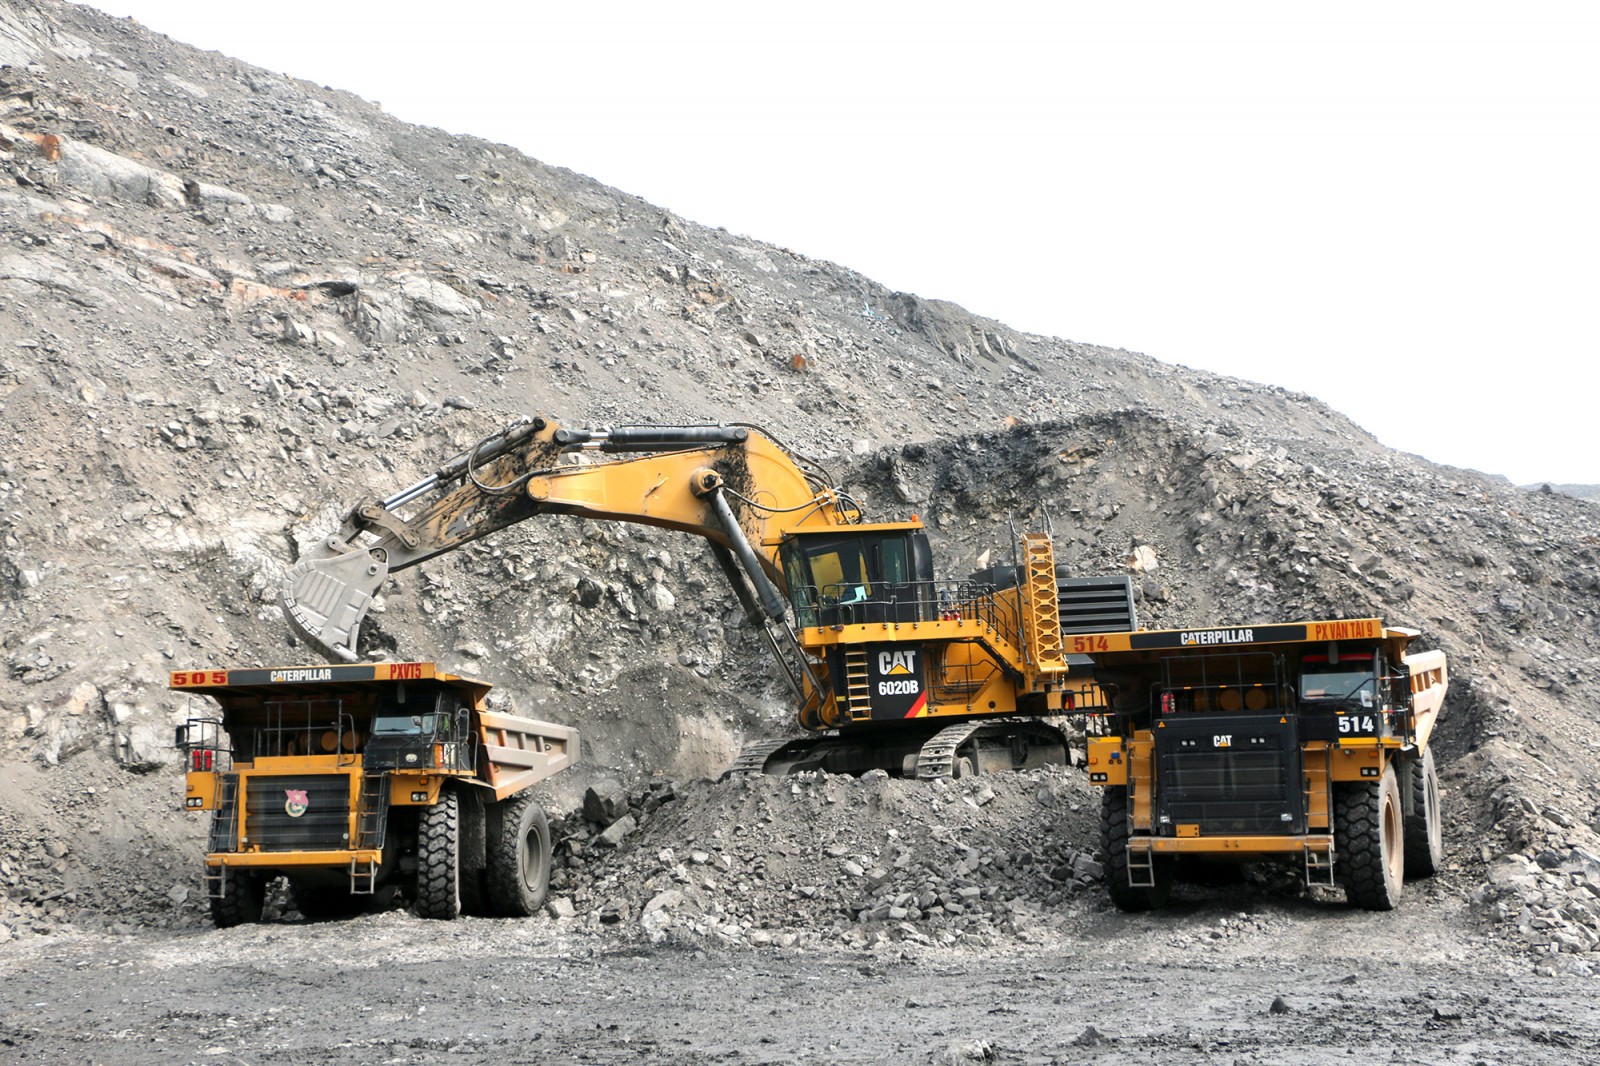 Giám sát hoạt động khai thác khoáng sản bằng công nghệ viễn thám